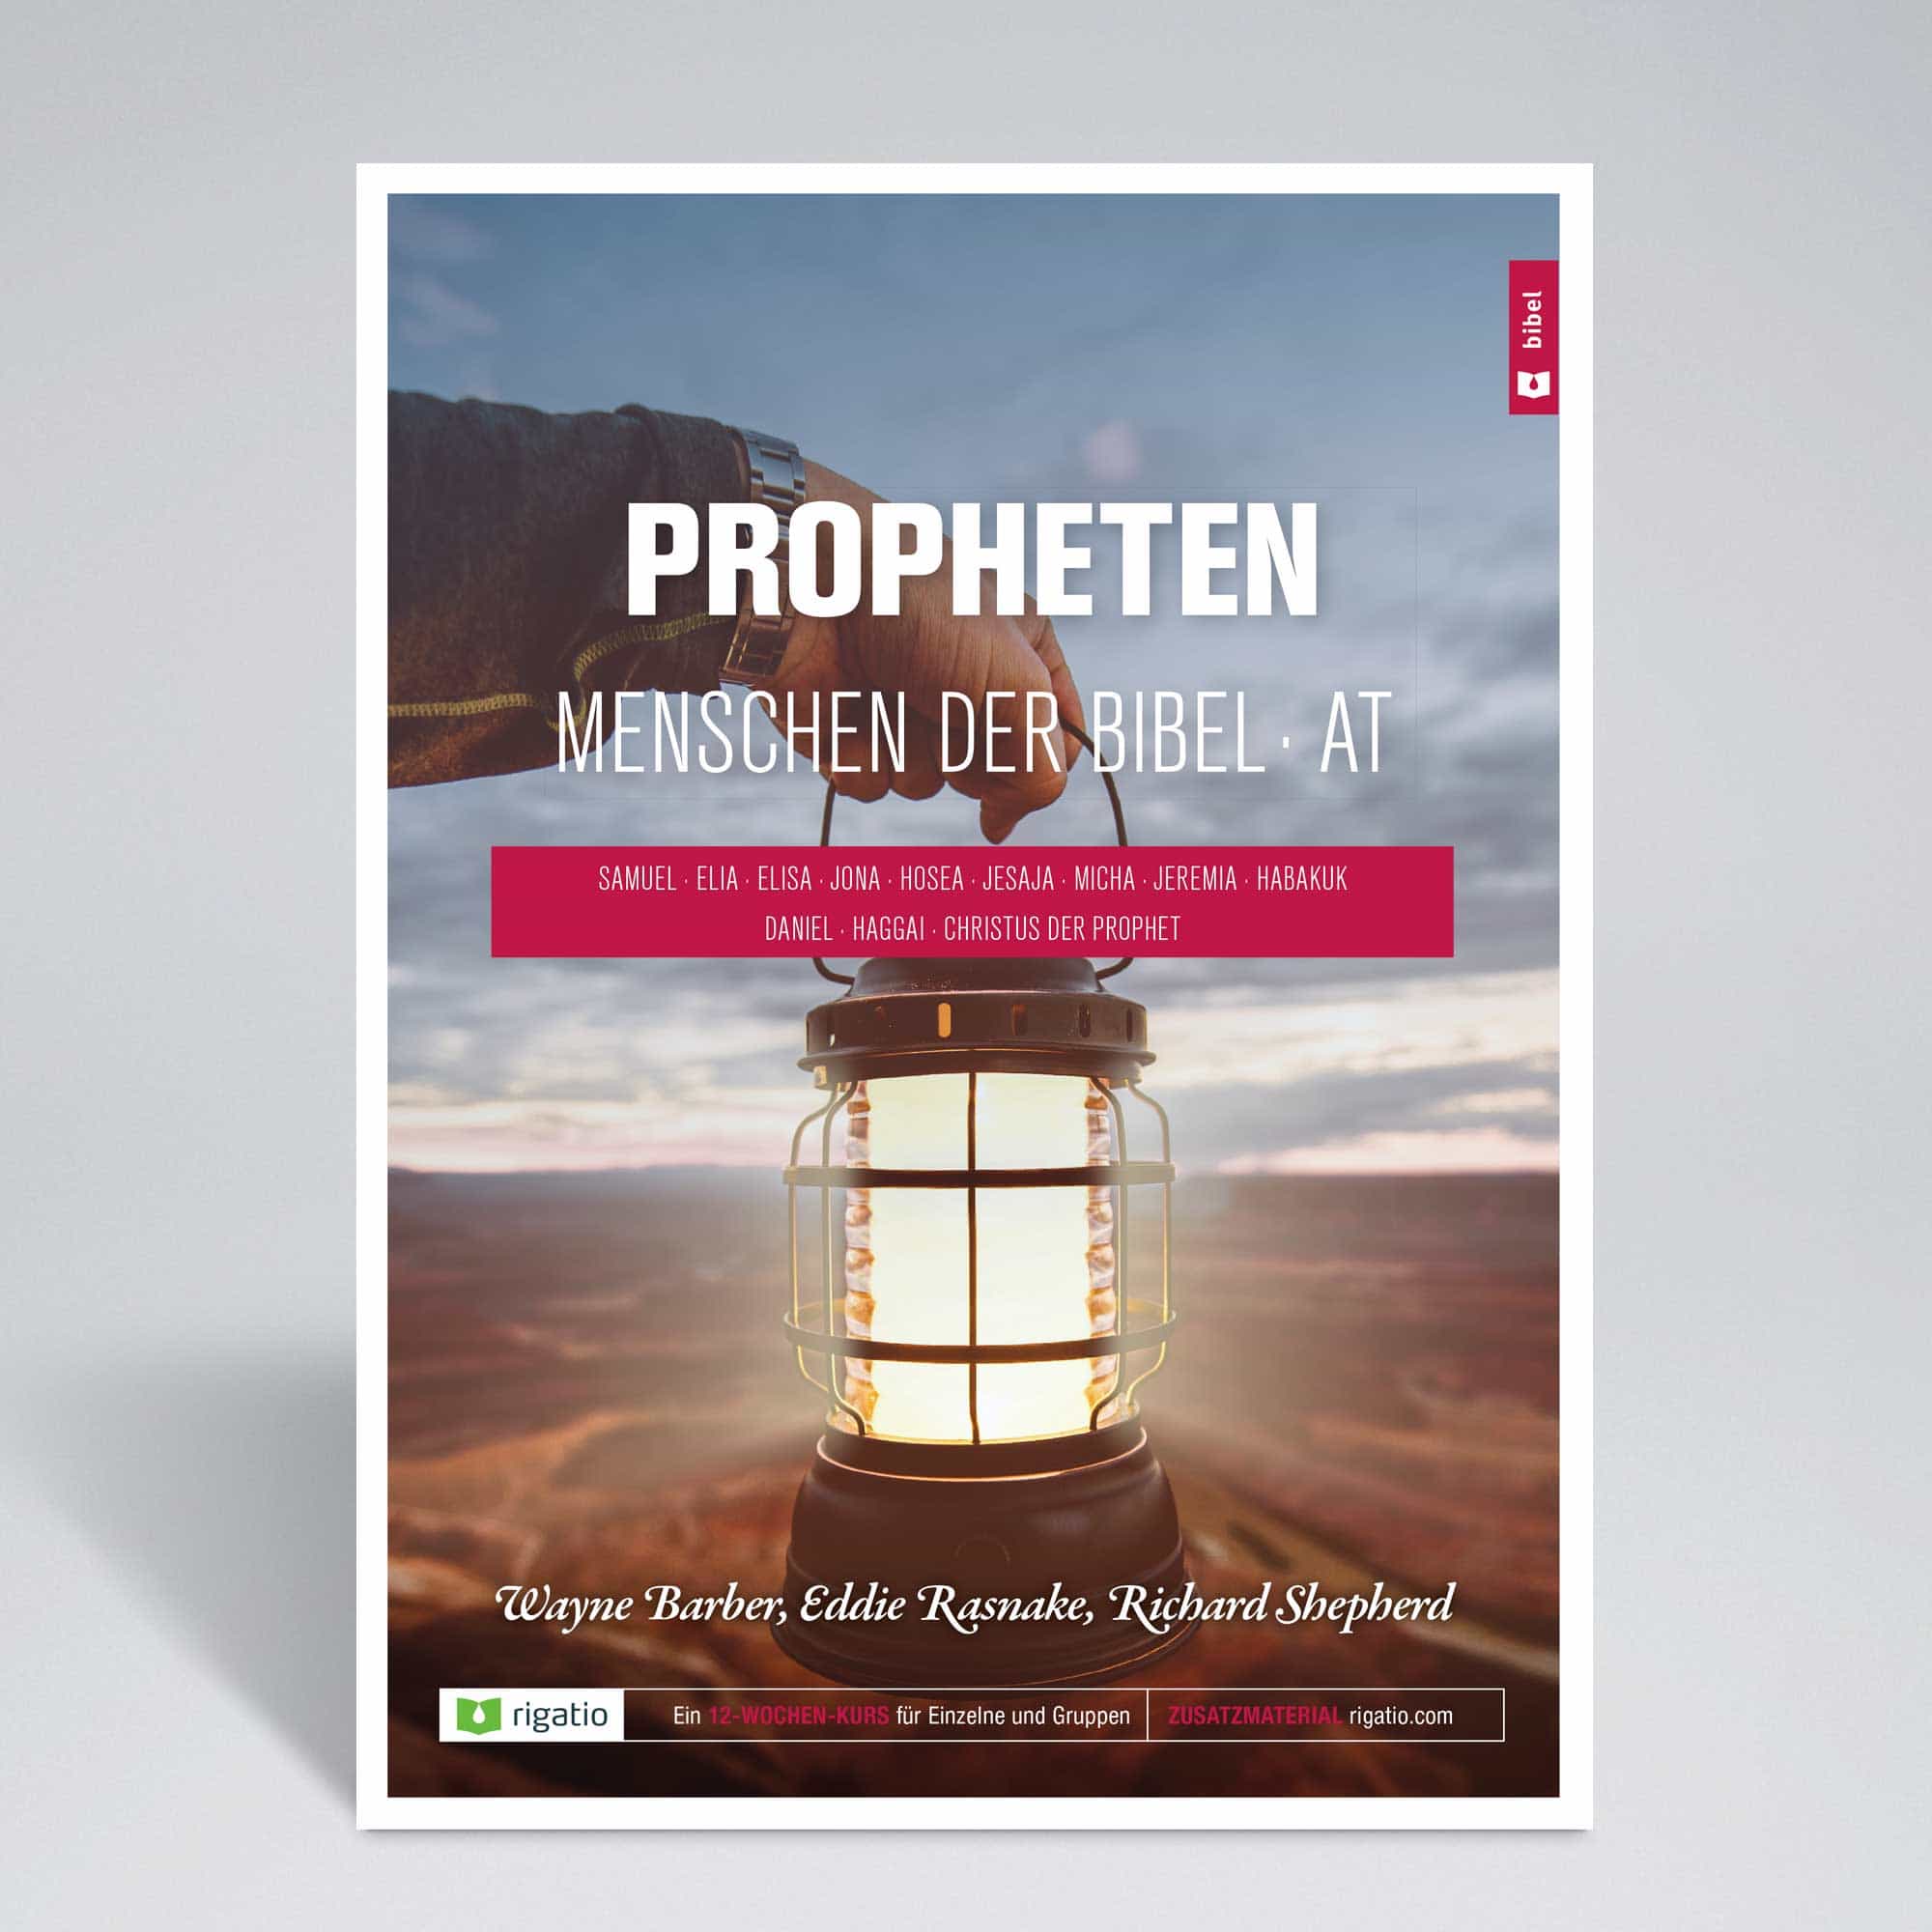 Propheten - Menschen der Bibel - AT